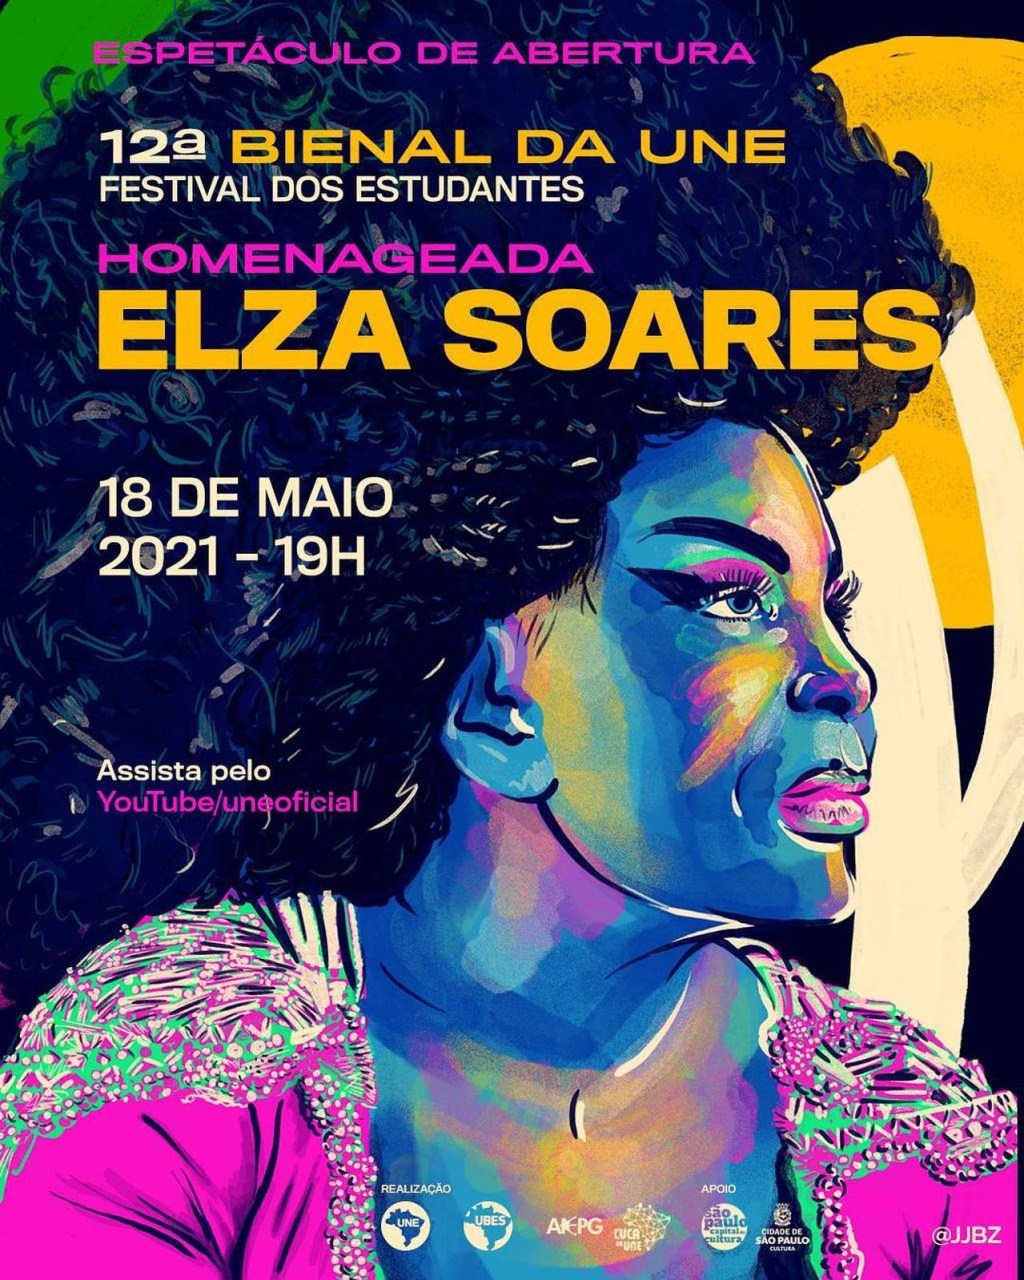 Cartaz da abertura da 12ª Bienal, com Elza Soares como homenageada.